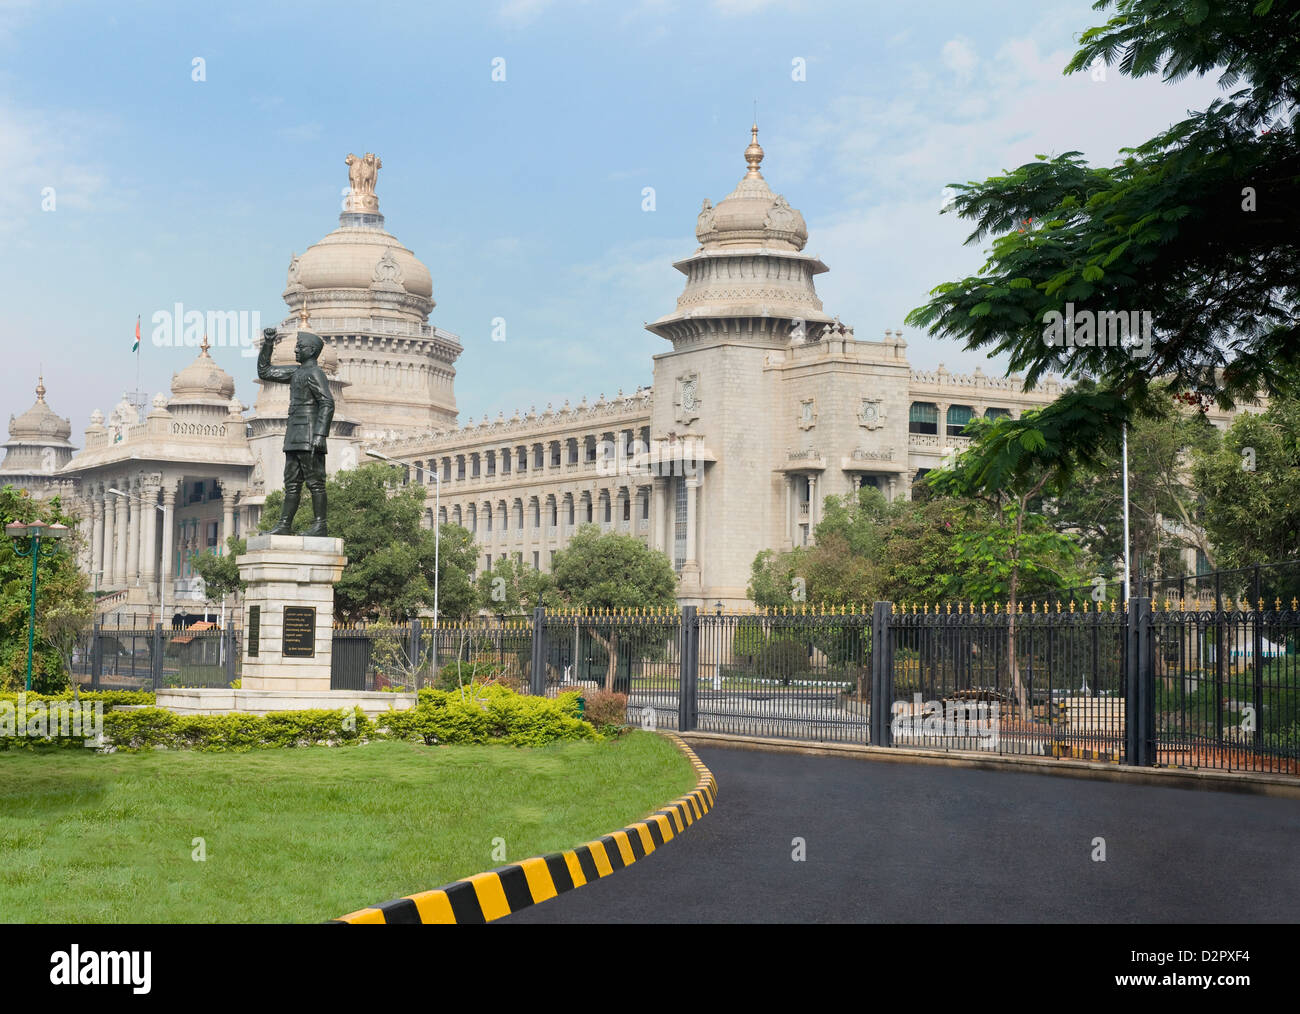 Statue de Subhas Chandra Bose en face d'un bâtiment gouvernemental, Vidhana Soudha, Bangalore, Karnataka, Inde Banque D'Images